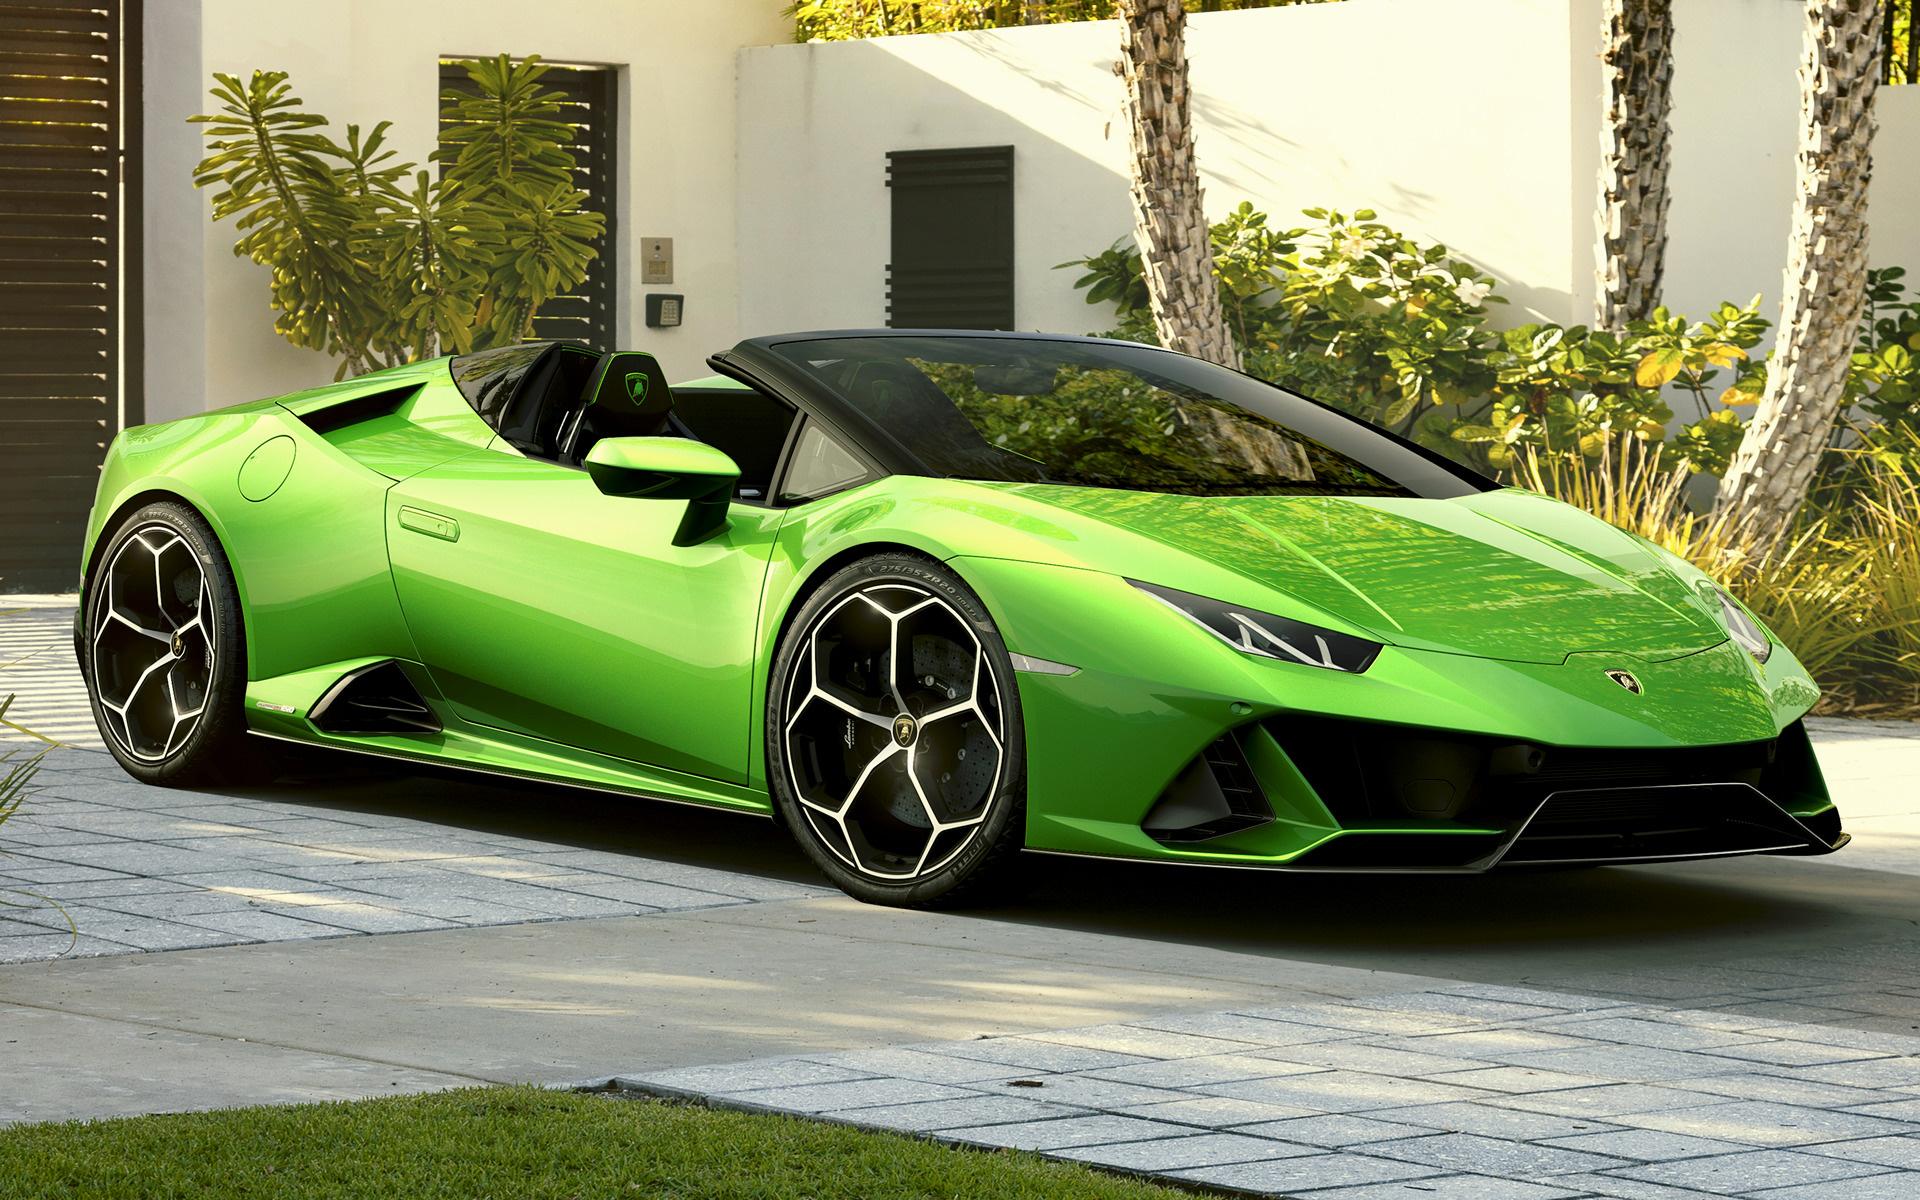 Lamborghini Huracan Evo Spyder and HD Image